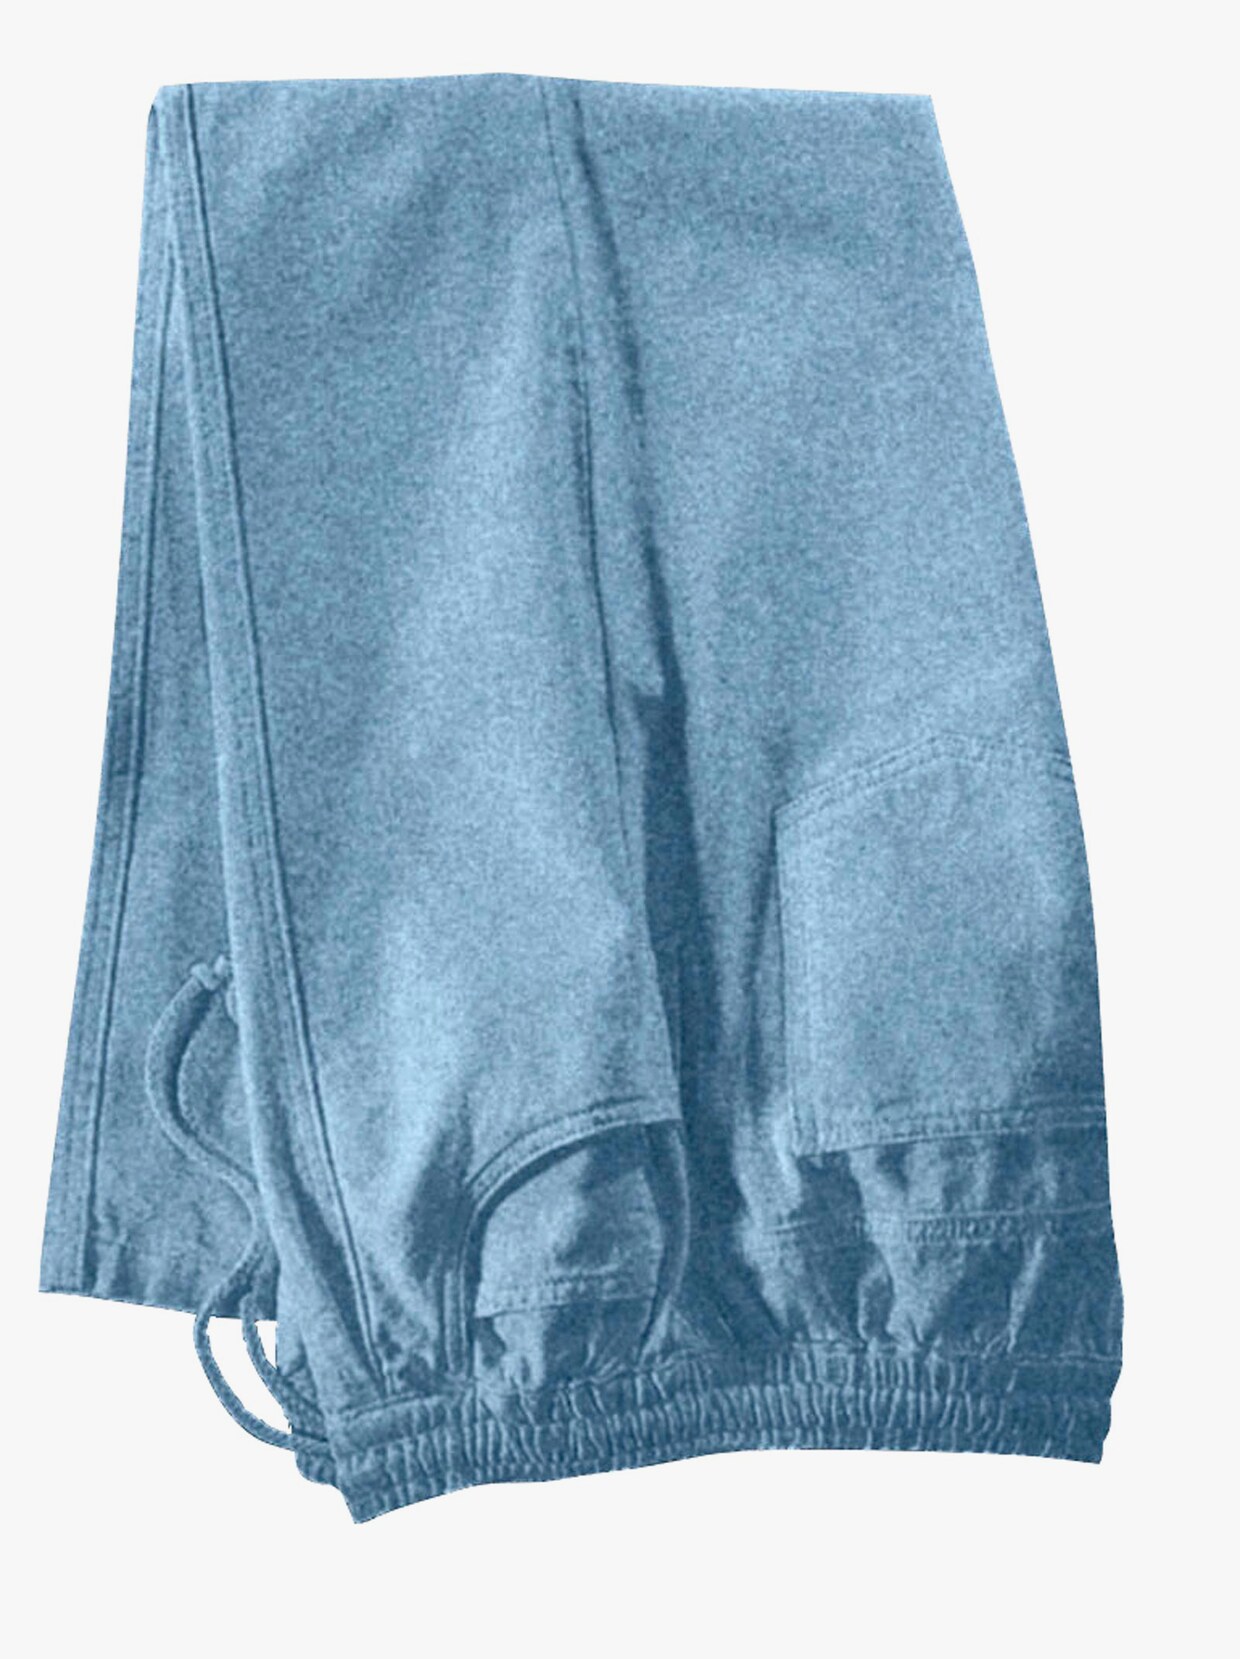 Nohavice na gumu - bielená modrá